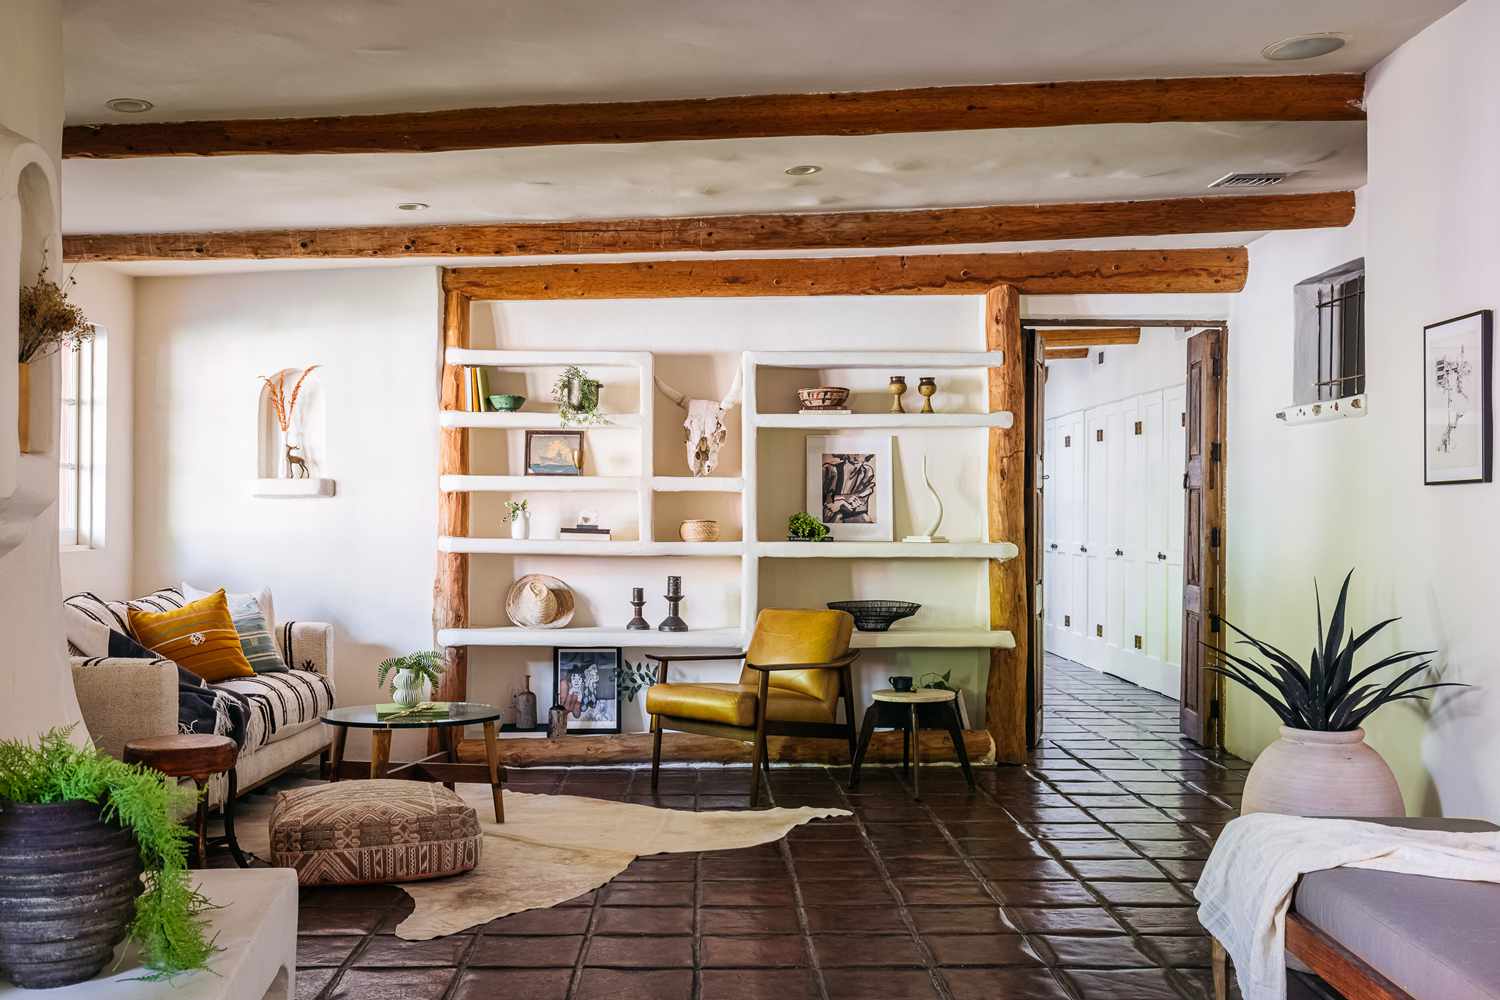 Wohnzimmer im mediterranen Stil mit gemusterten Möbeln und weißen Wänden mit offenen Regalen